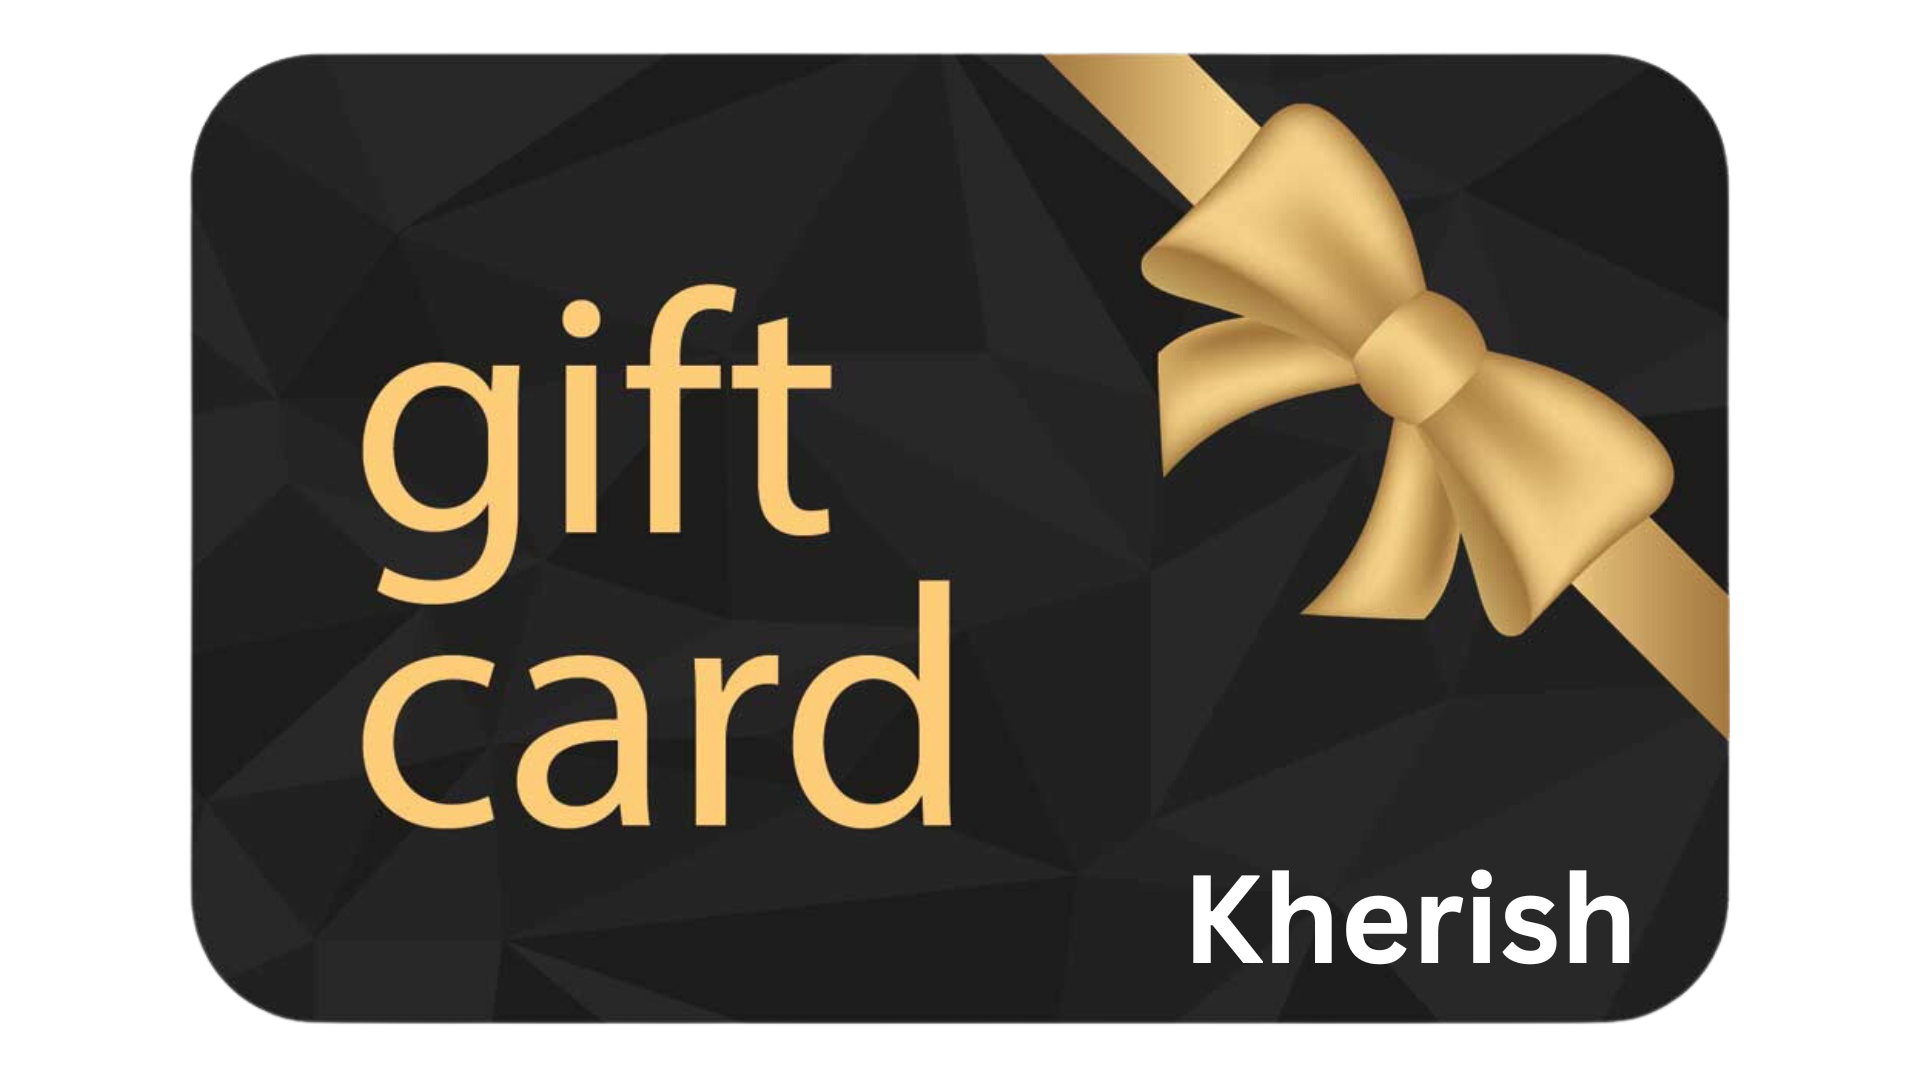 Kherish Gift Card